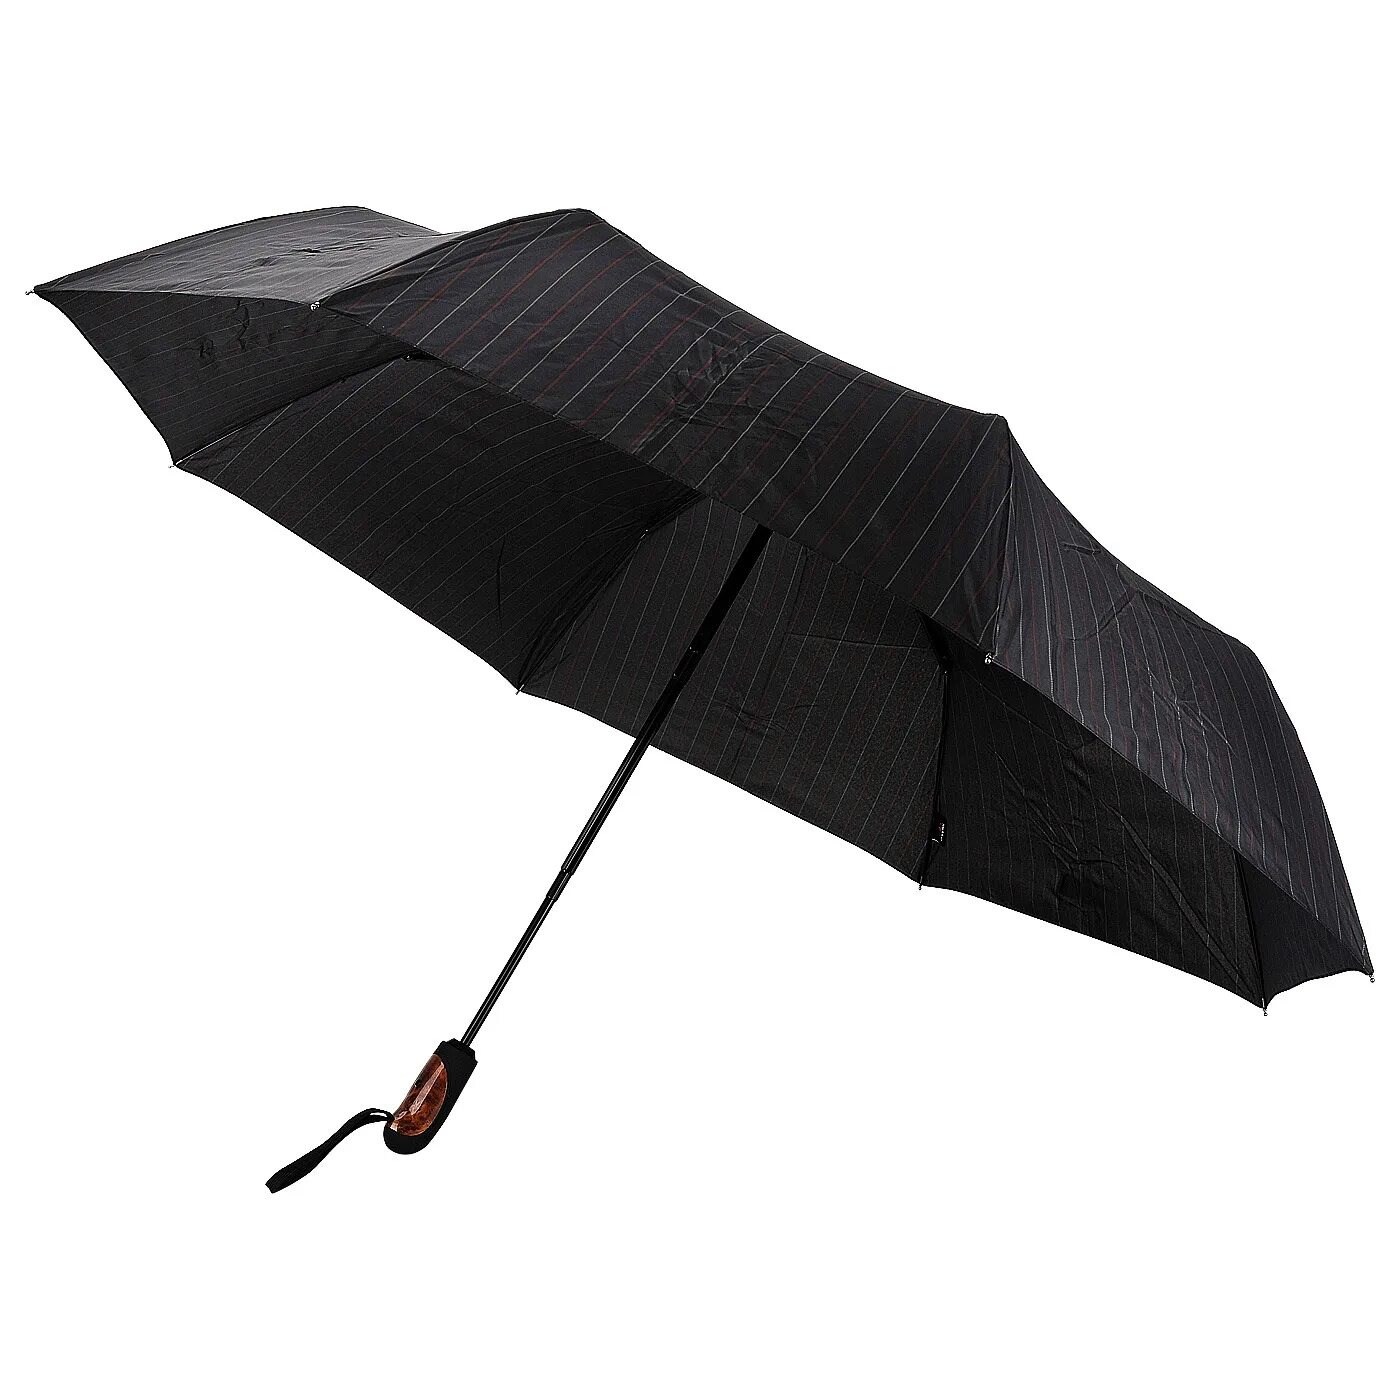 Зонт Doppler 722863dsz. Зонт Doppler 74615708. Зонт Doppler черный. Зонт Doppler мини. Купить мужской зонтик